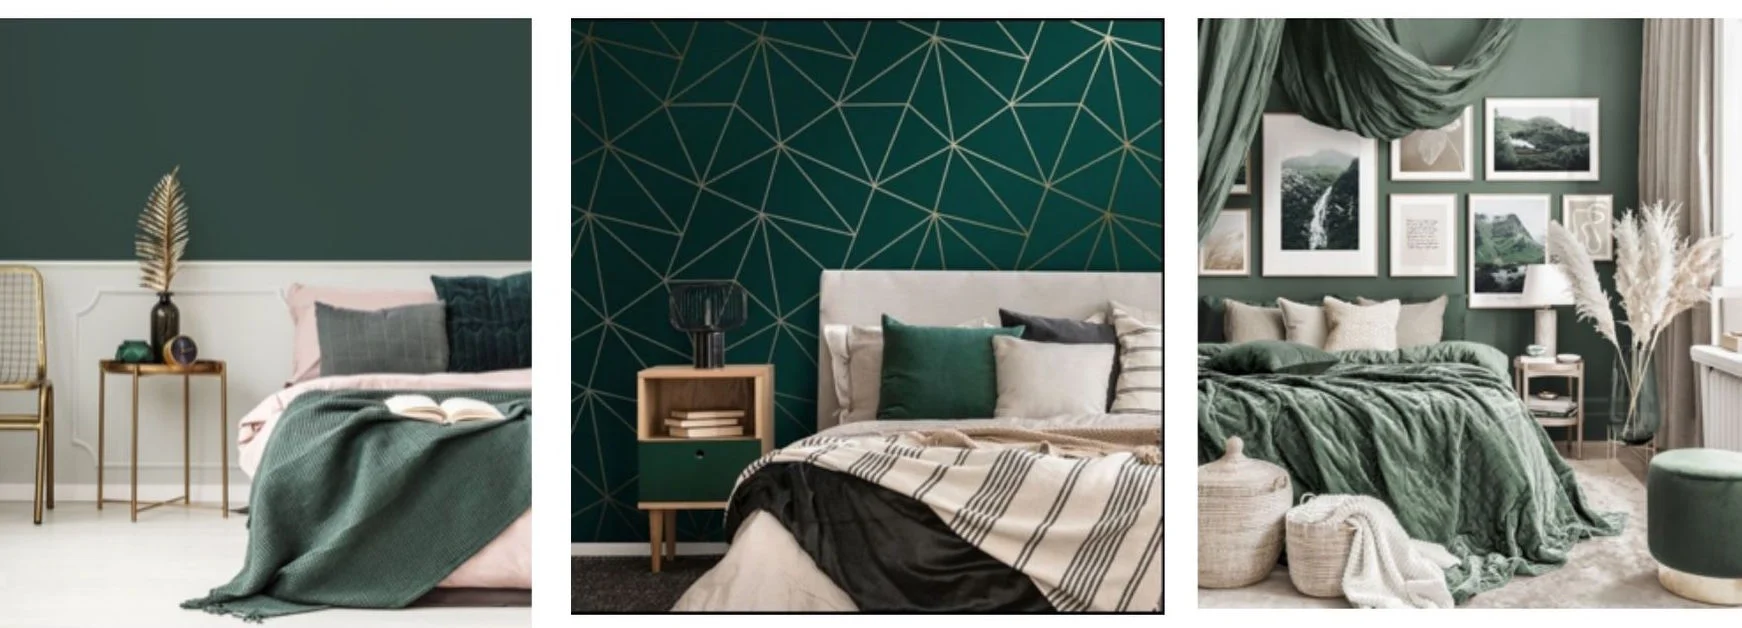 Zielona sypialnia - wnętrze, które daje ukojenie